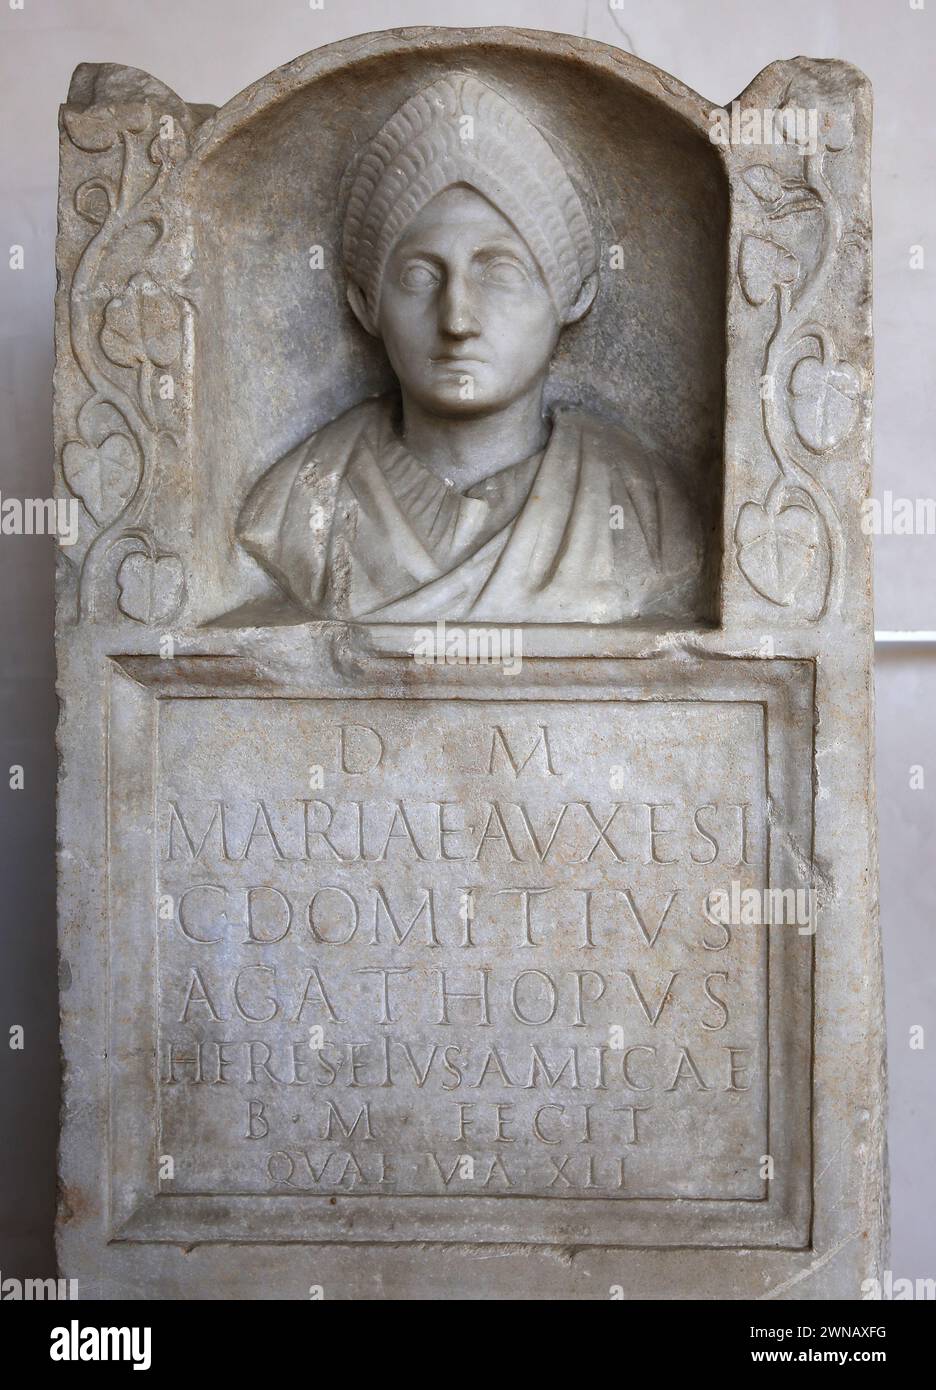 Grabbeihilfe, gewidmet von Caius Domitus Agathopus Maria Auxesis, die im Alter von einundvierzig starb. Marmor. 2. Jahrhundert n. Chr. Trajanalter. Rom. Nat Stockfoto